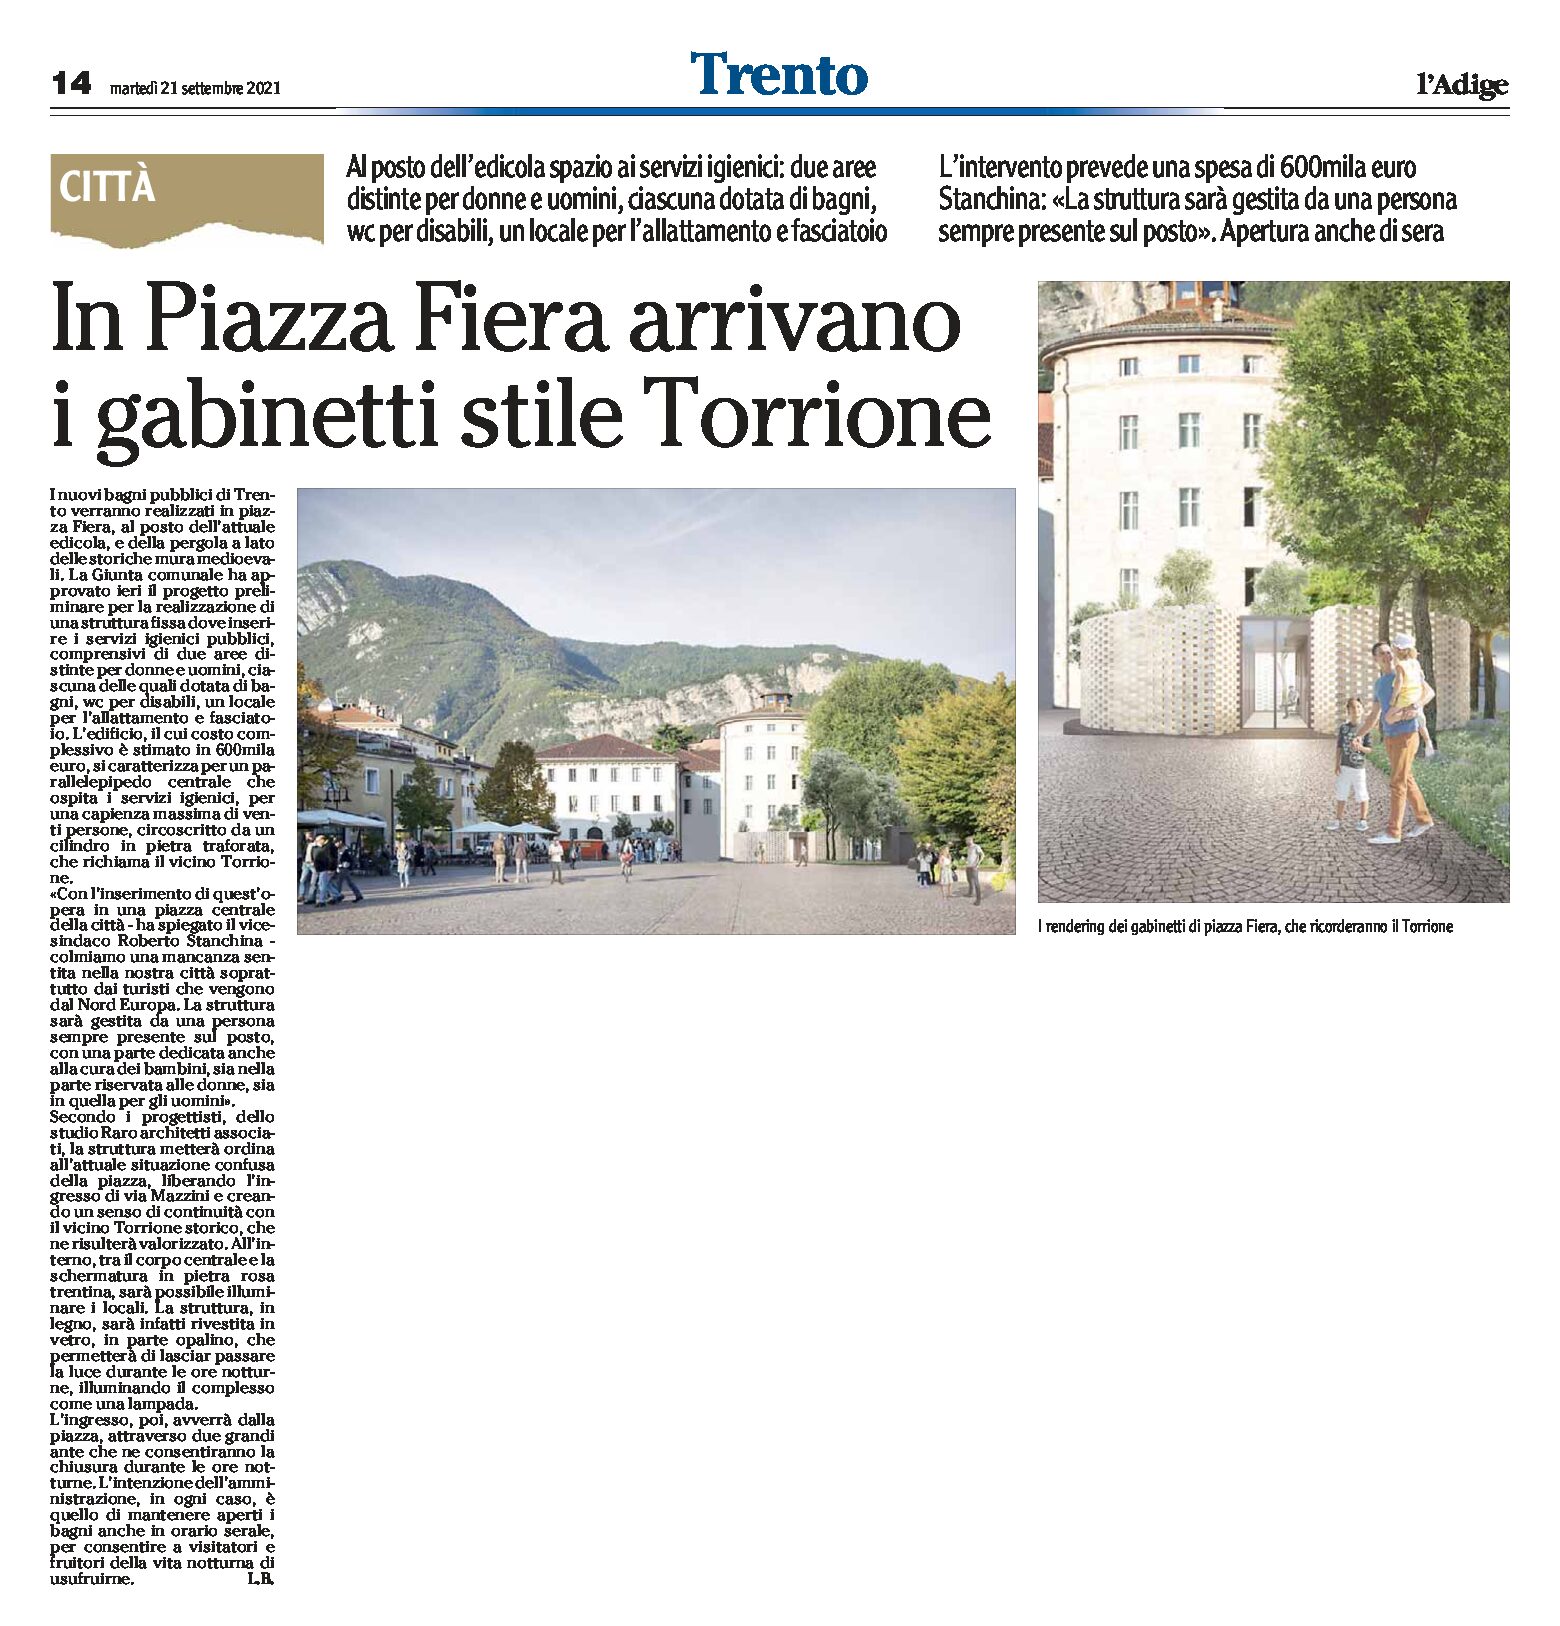 Trento: in piazza Fiera arrivano i gabinetti stile Torrione